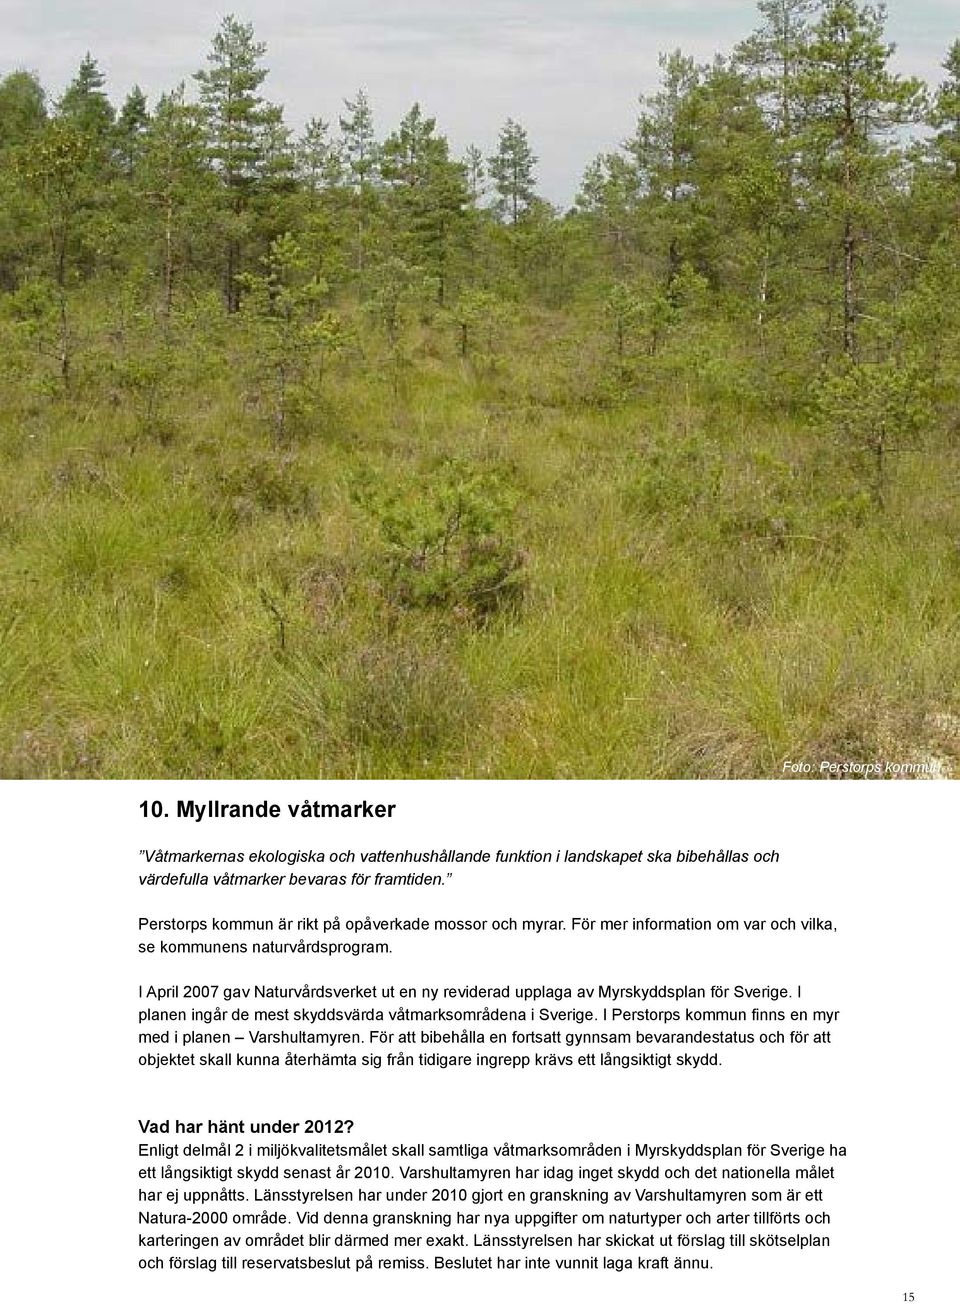 I April 27 gav Naturvårdsverket ut en ny reviderad upplaga av Myrskyddsplan för Sverige. I planen ingår de mest skyddsvärda våtmarksområdena i Sverige.